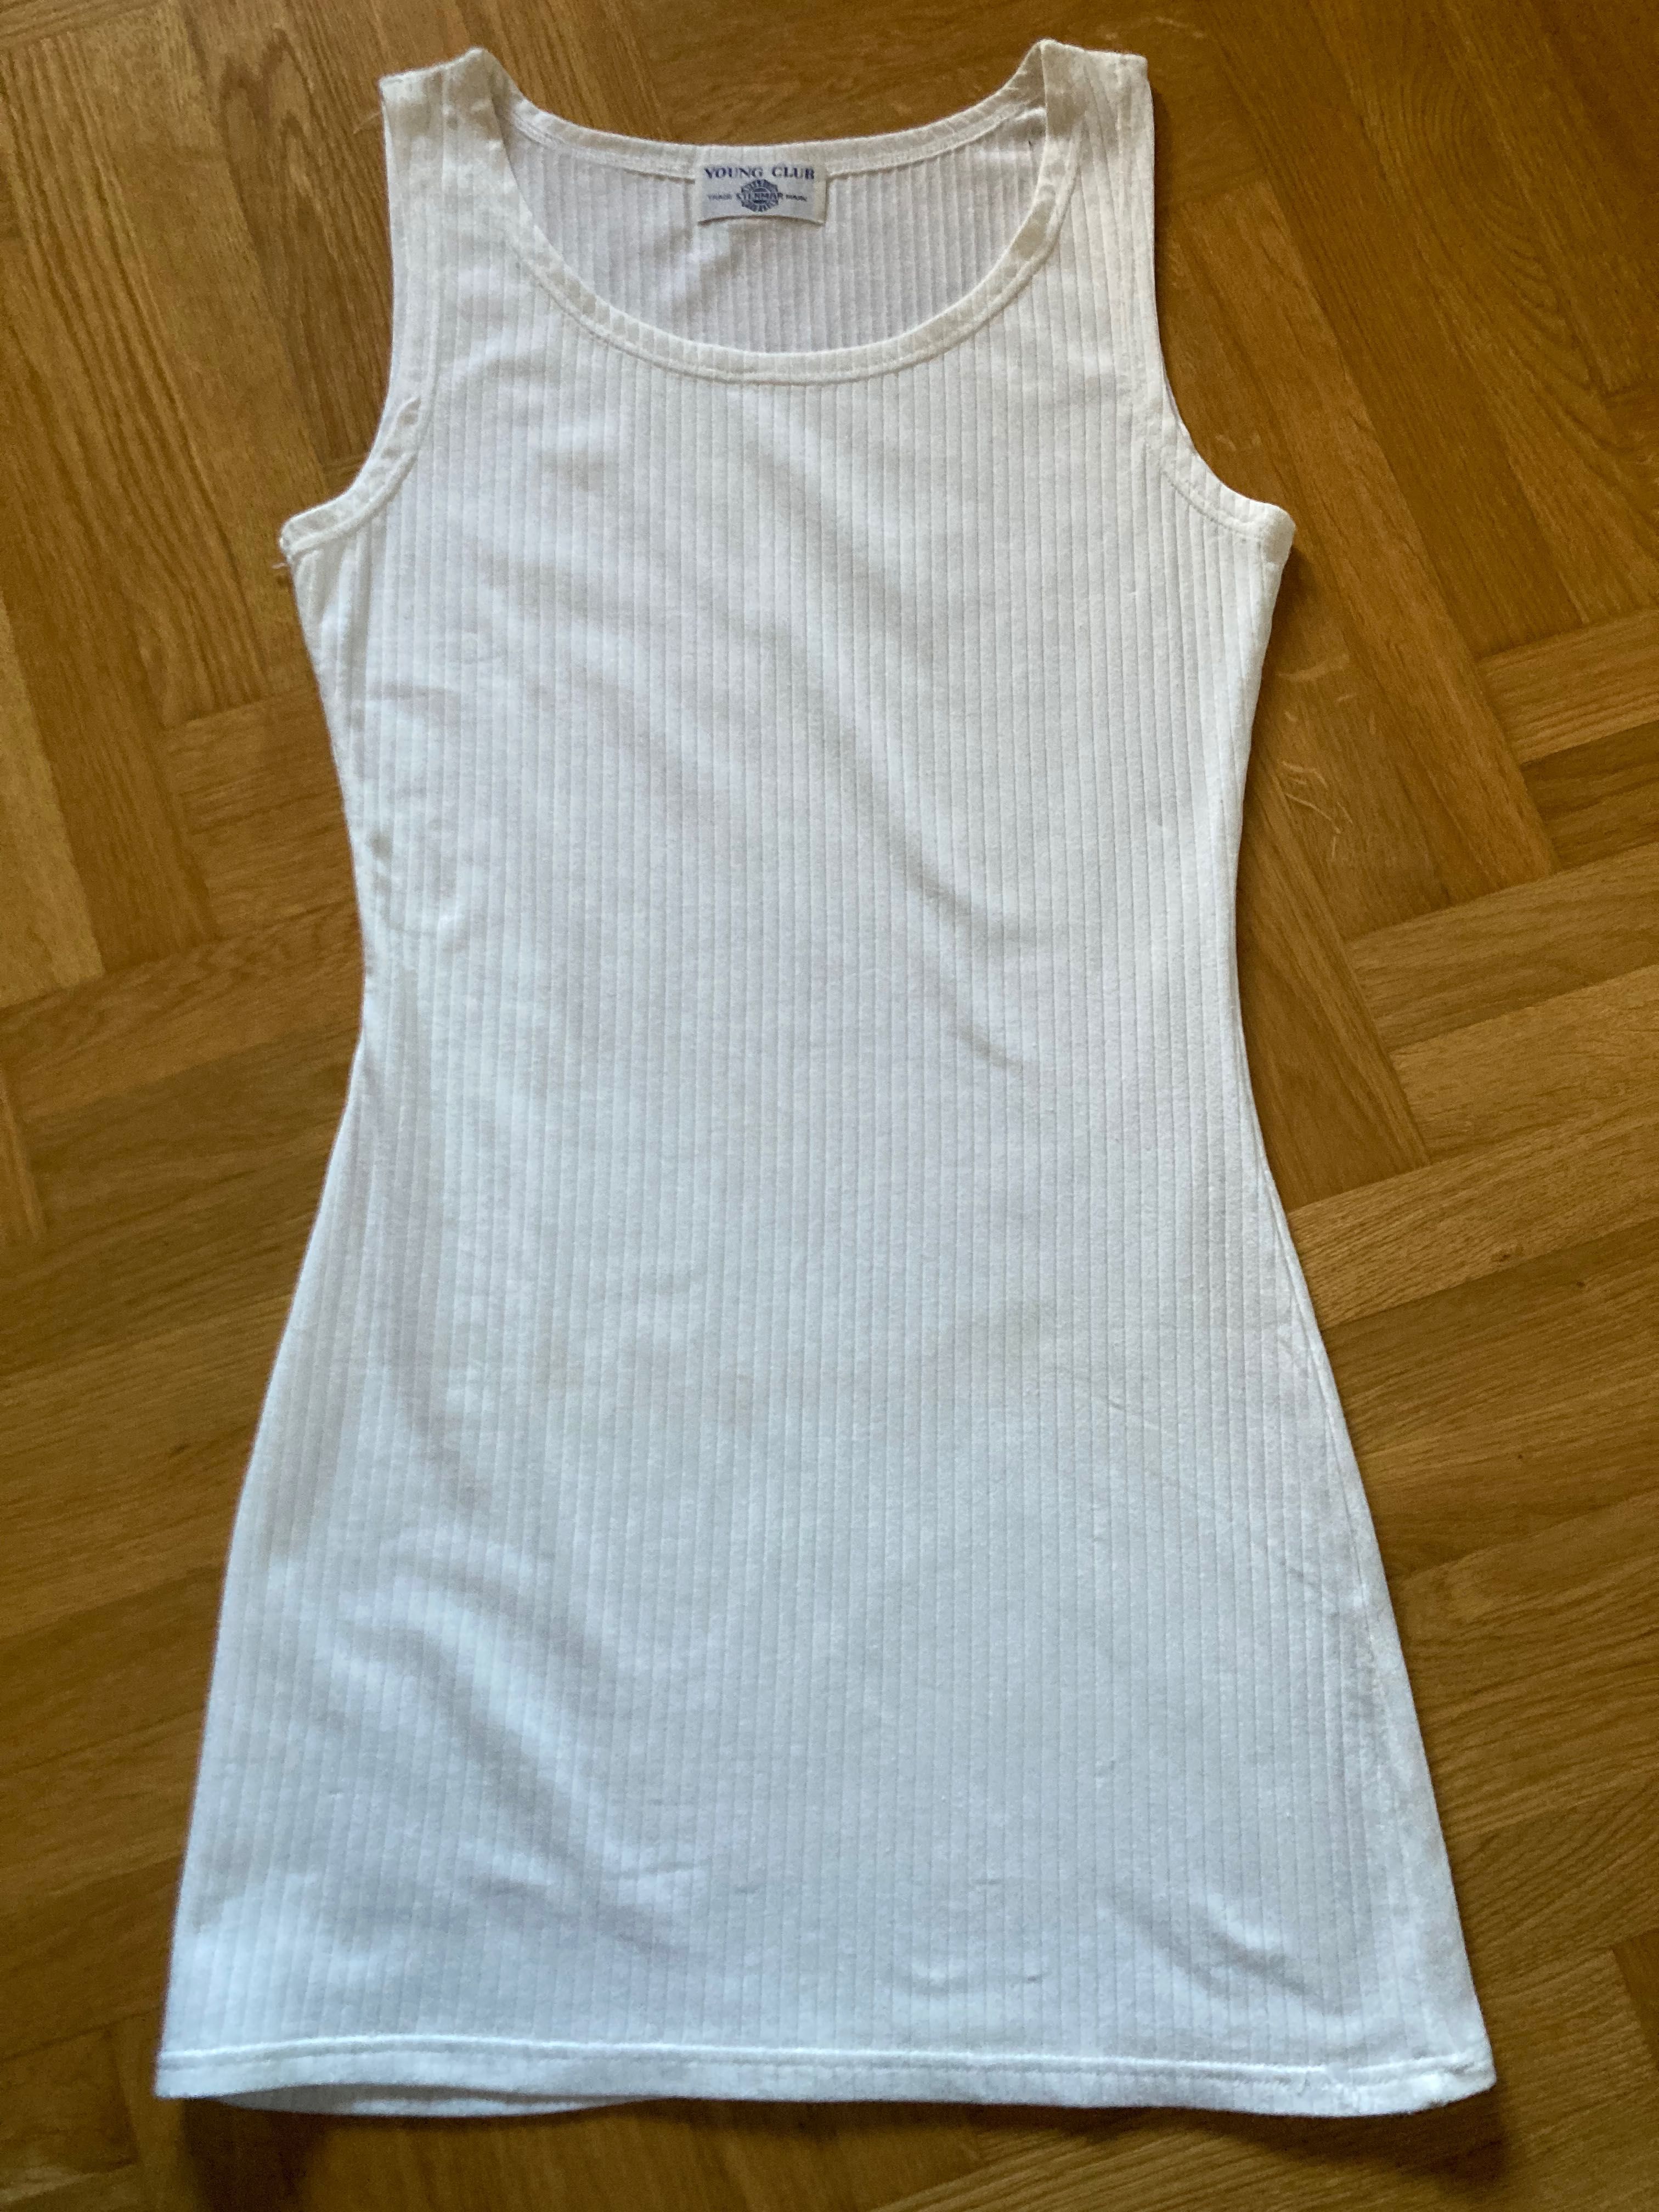 Koszulka podkoszulka na ramiączka długa do bioder biała r. S